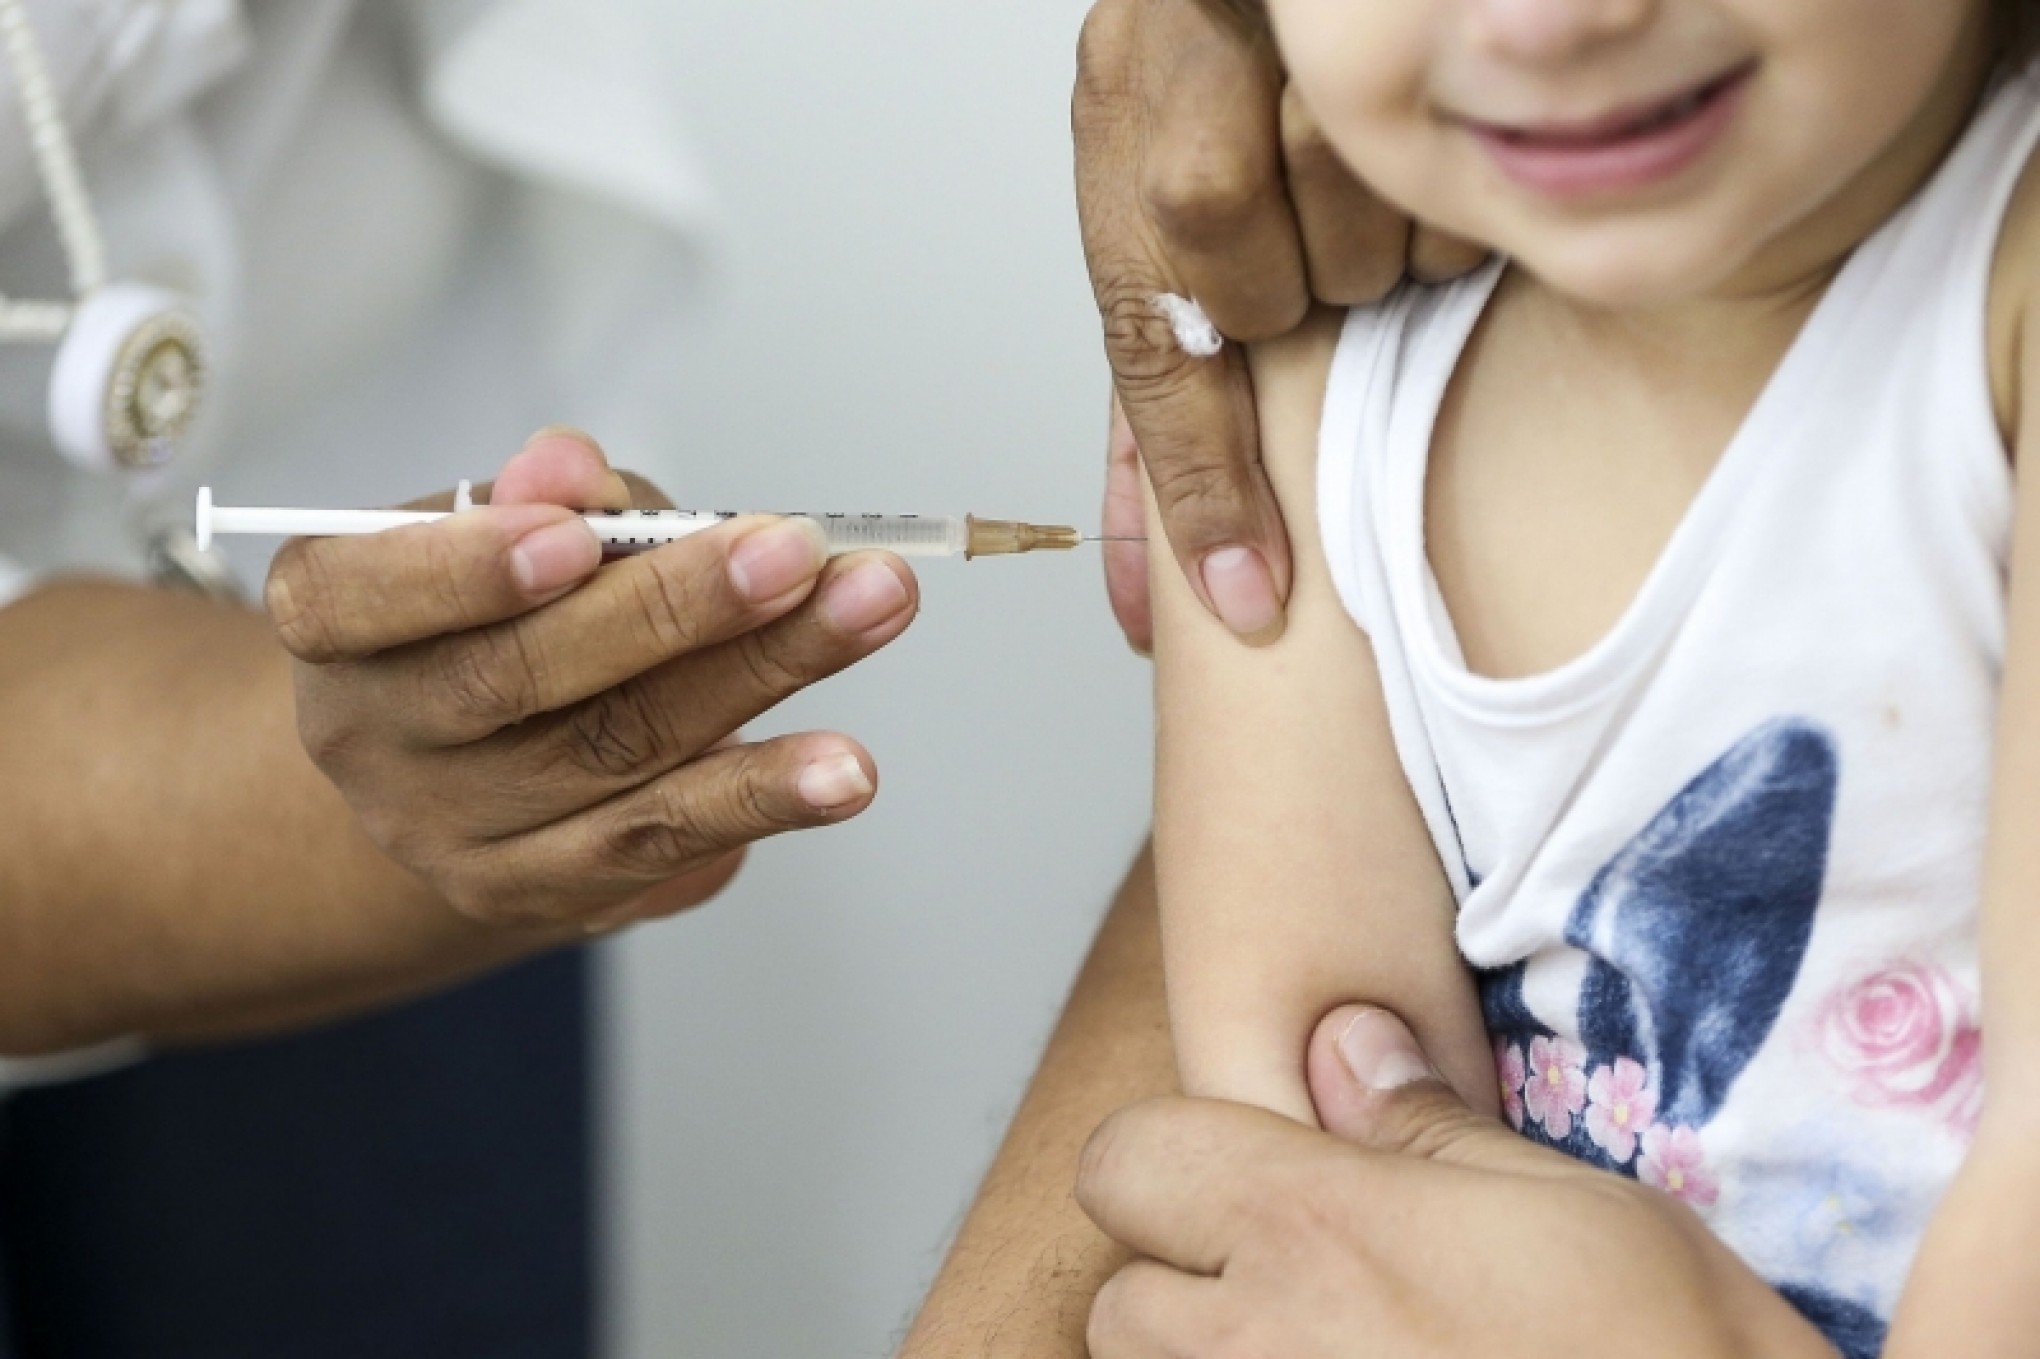 Estoques de vacinas normalizam com recebimento de novo lote, diz Prefeitura